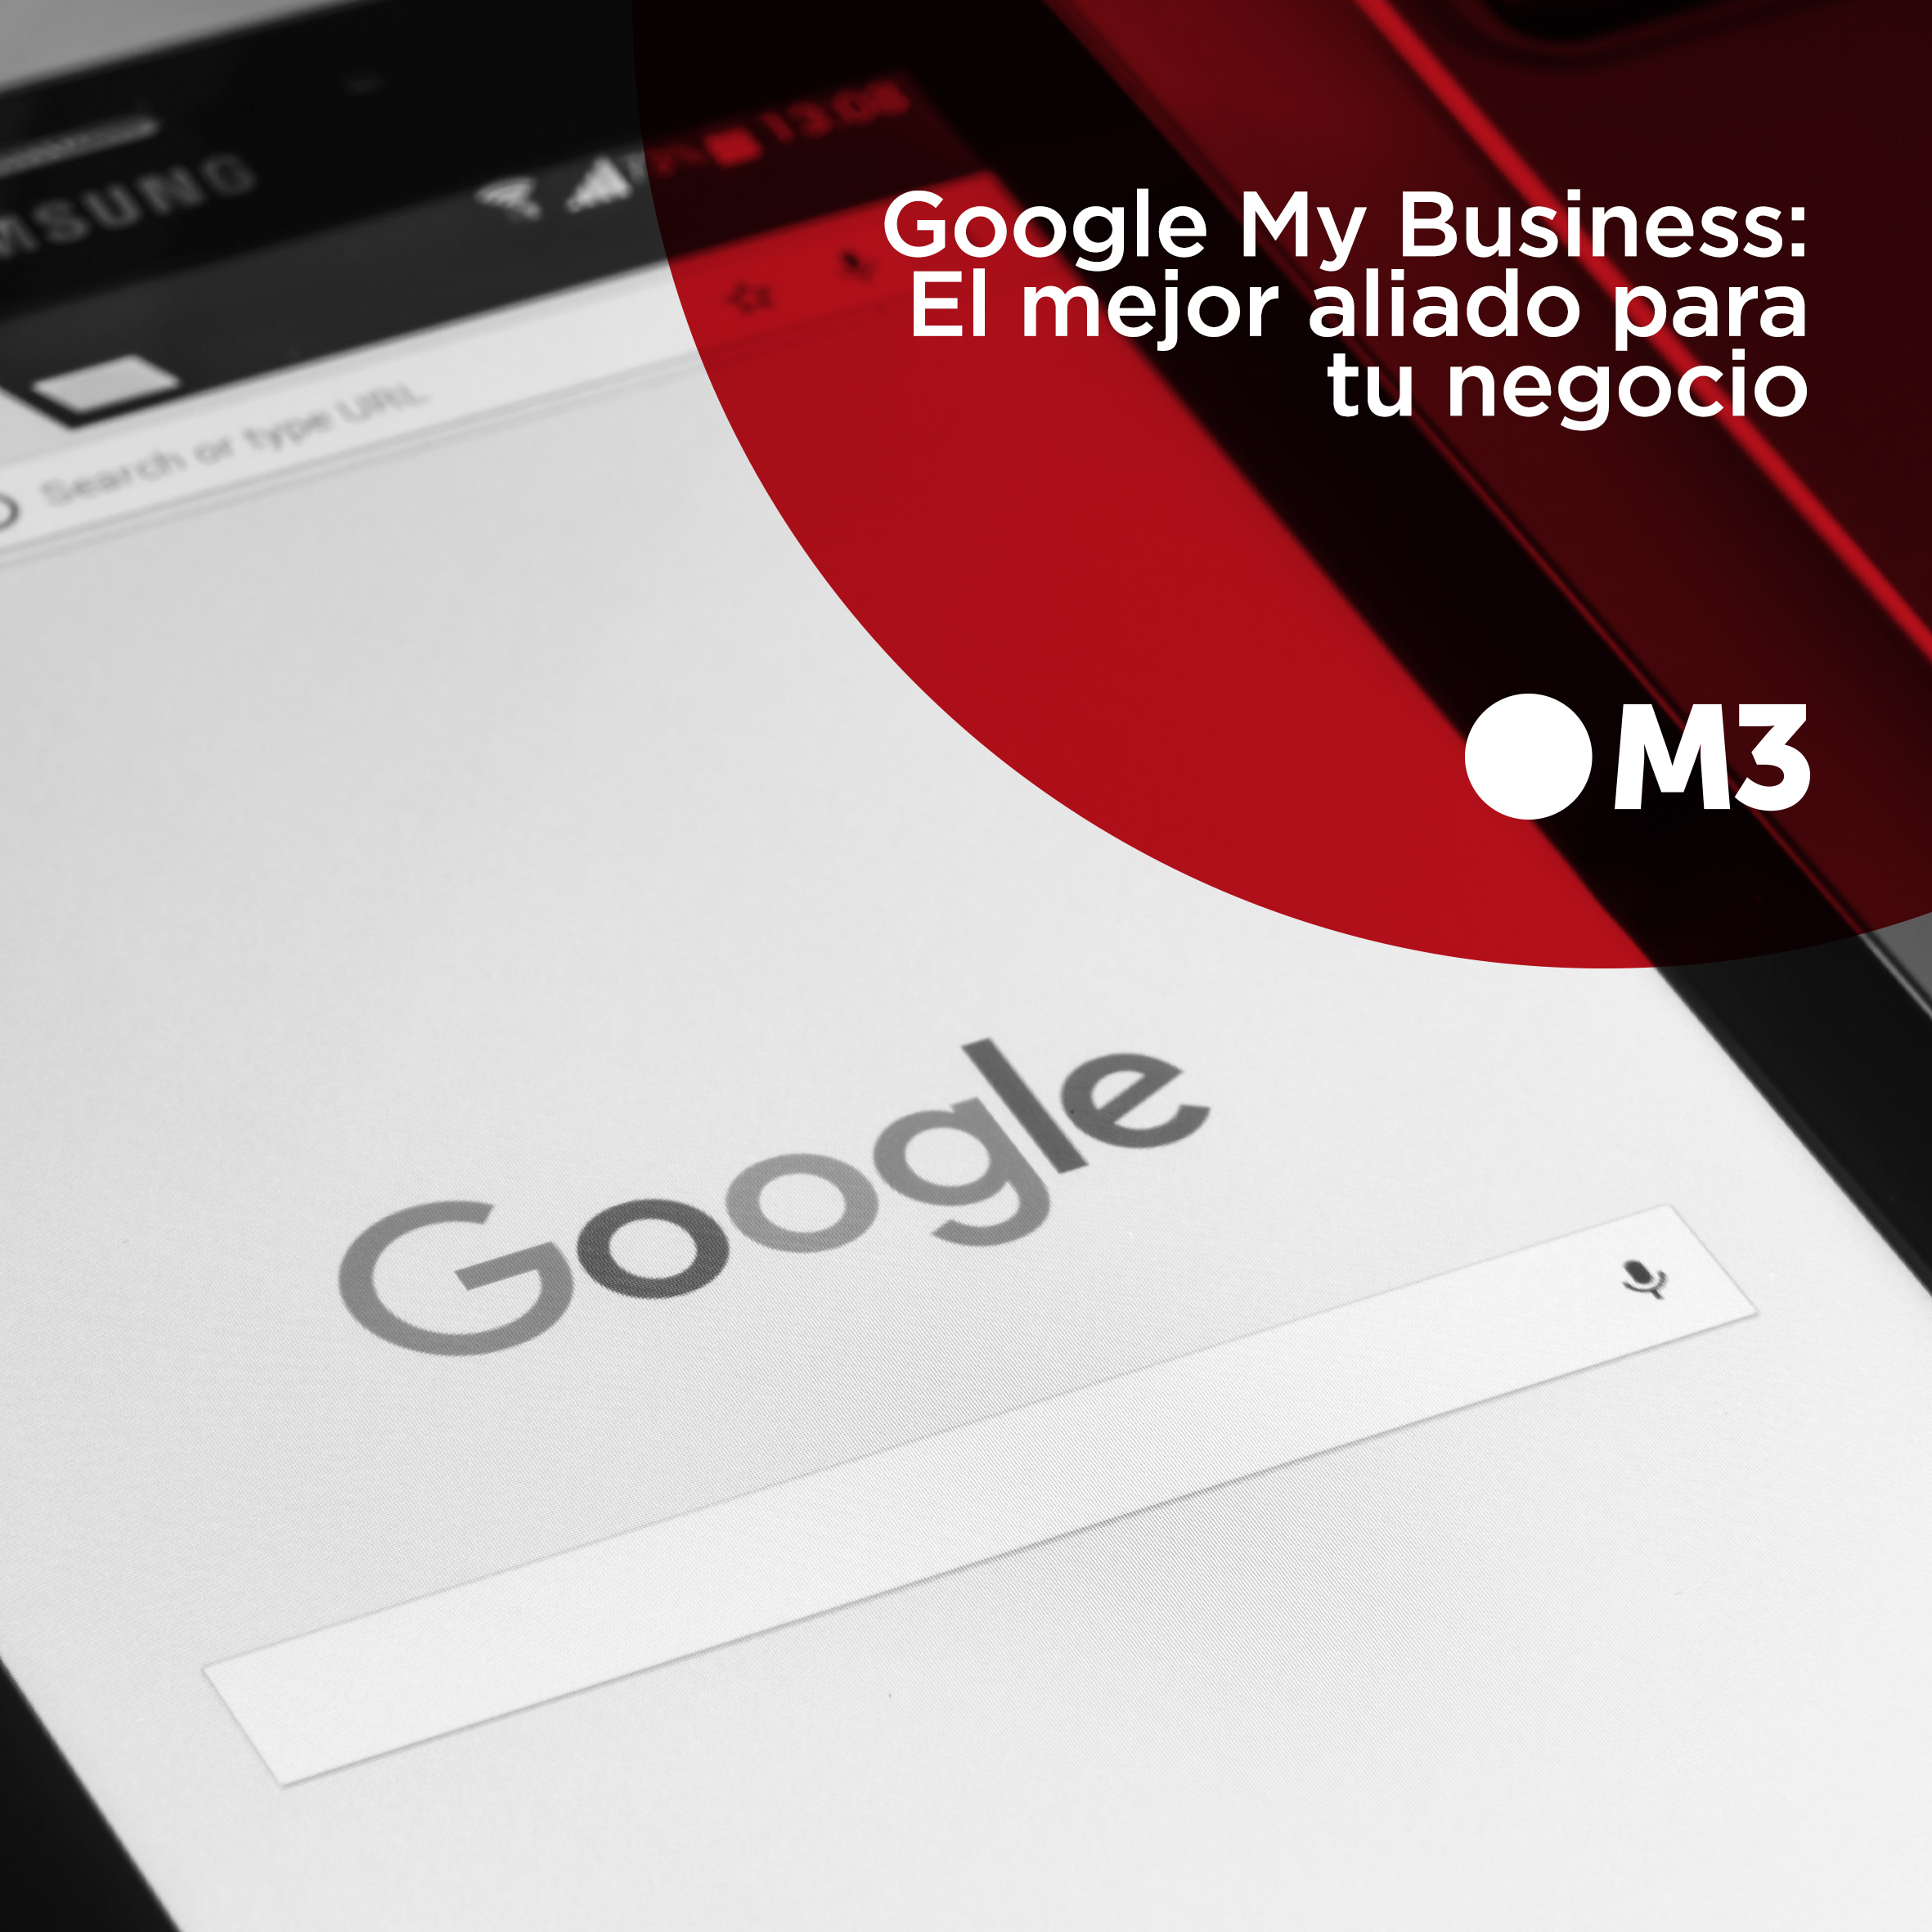 Google My Business: El mejor aliado para tu negocio